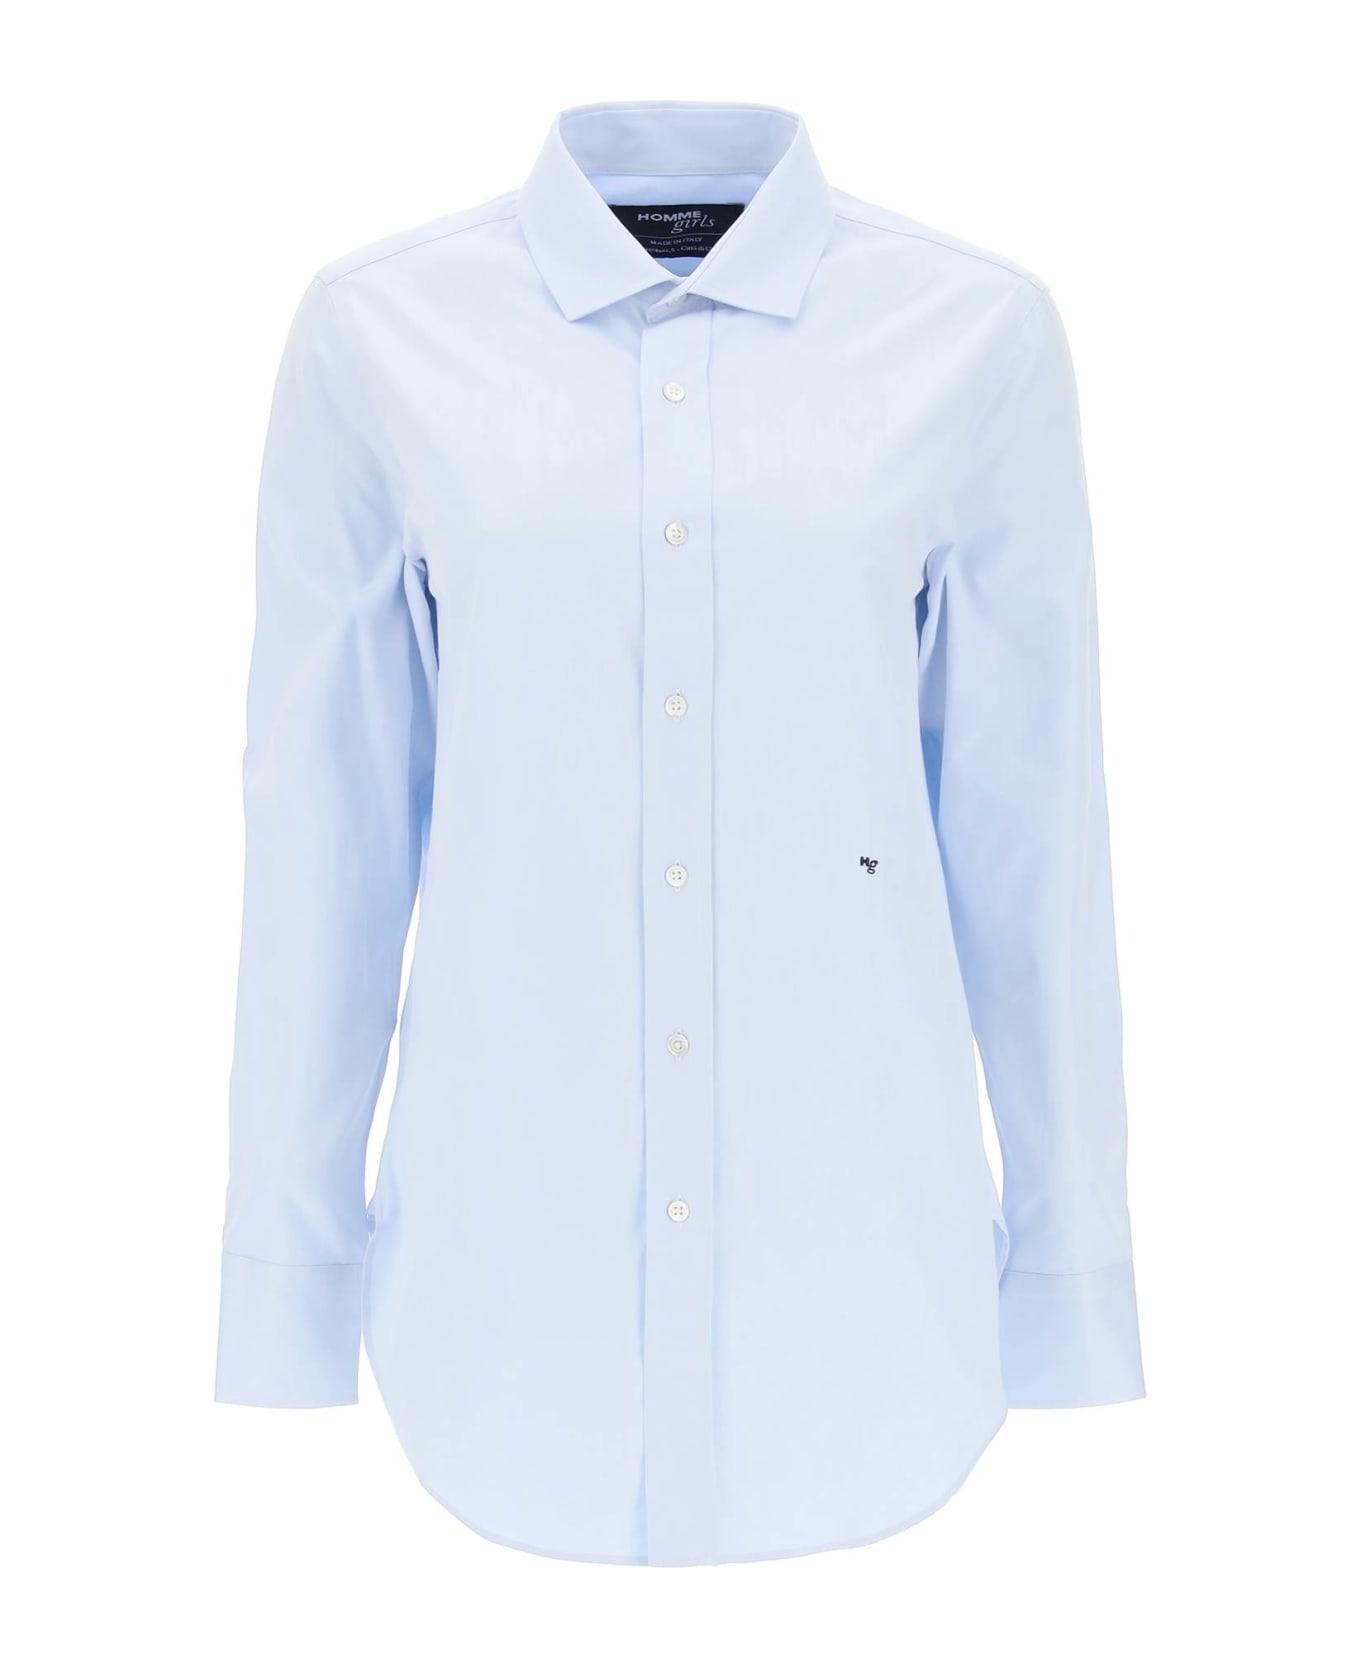 HommeGirls Cotton Twill Shirt - LIGHT BLUE (Light blue)